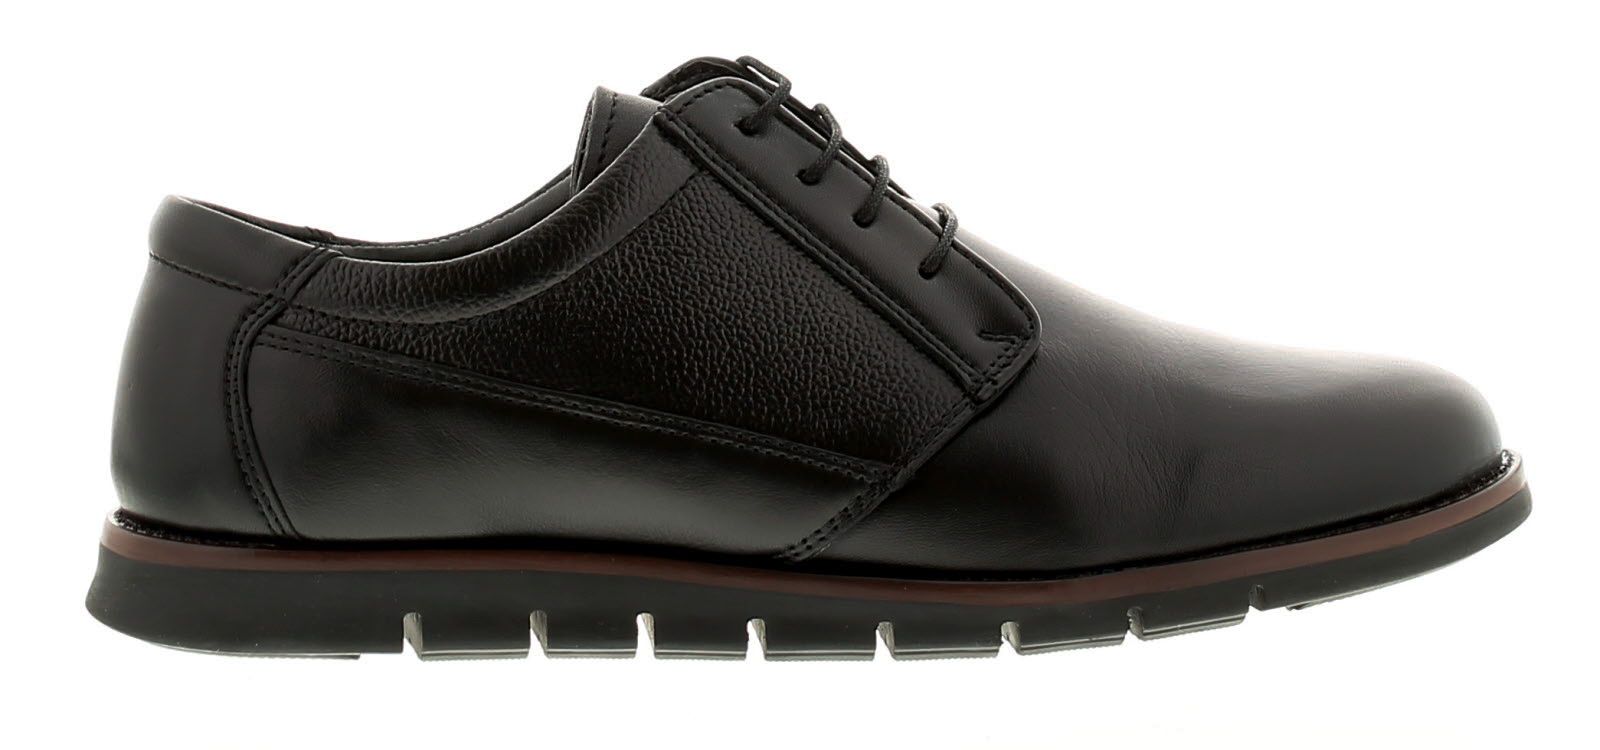 Men's Dr Keller Angus Soft Leather Lace-Up Shoes - Black